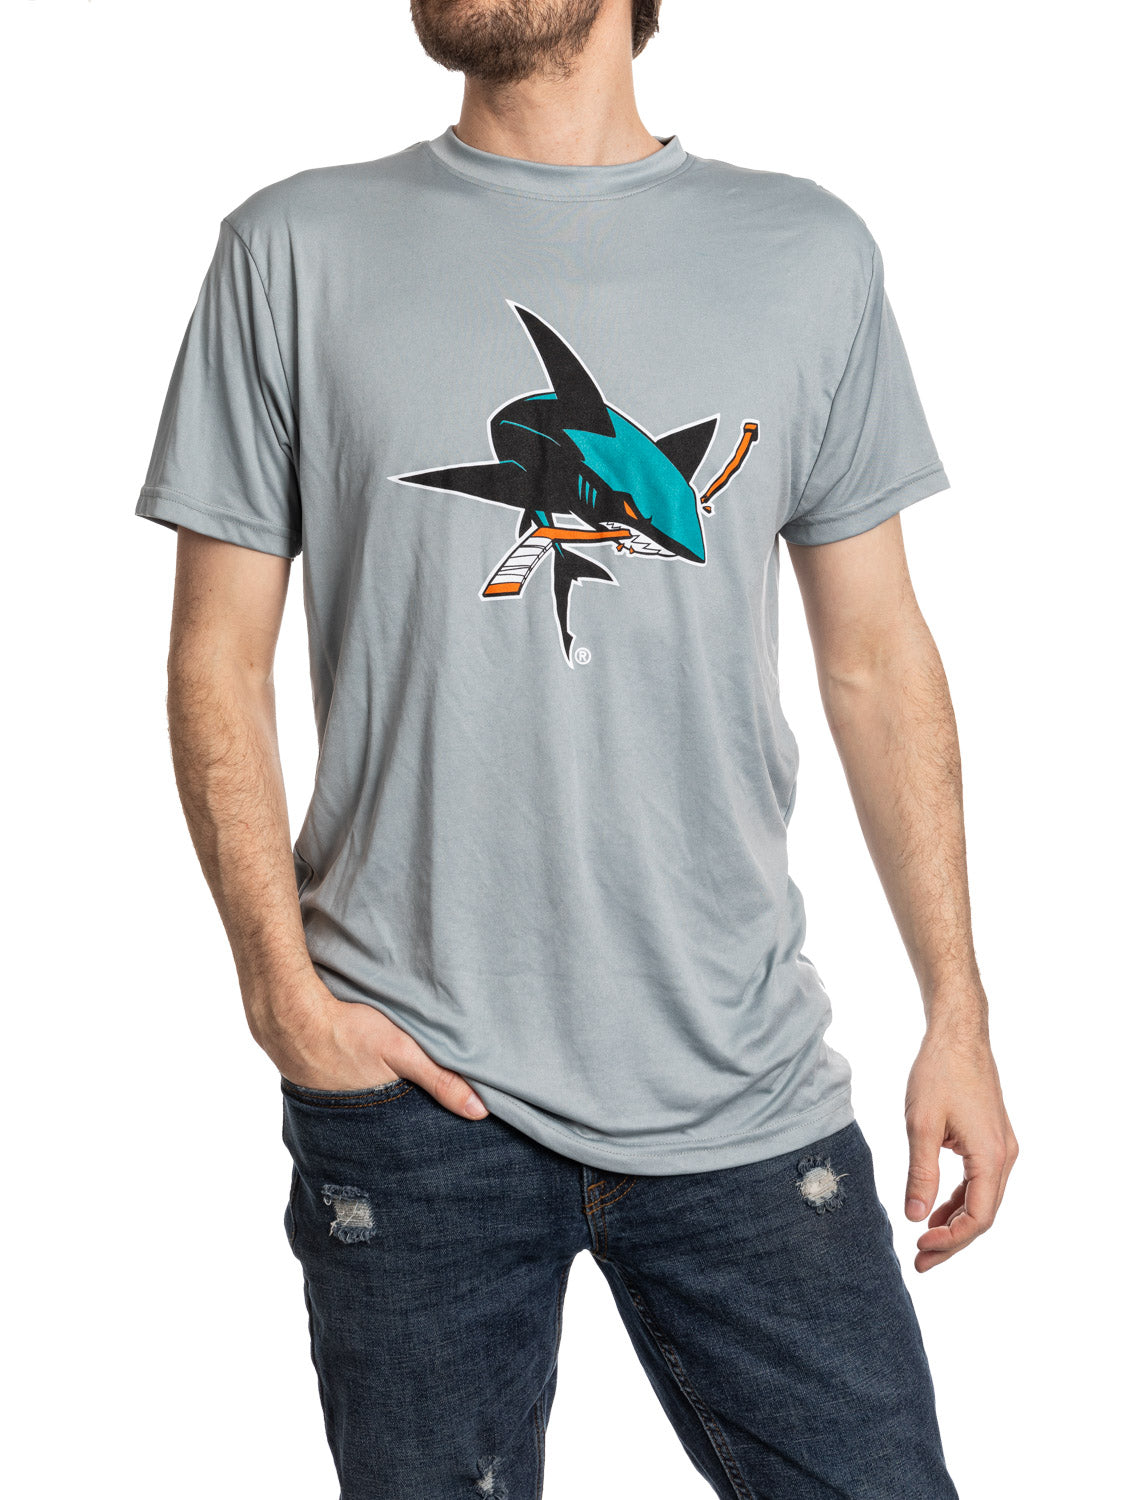 San Jose Sharks Short Sleeve Rashguard T Shirt - Alternate Logo